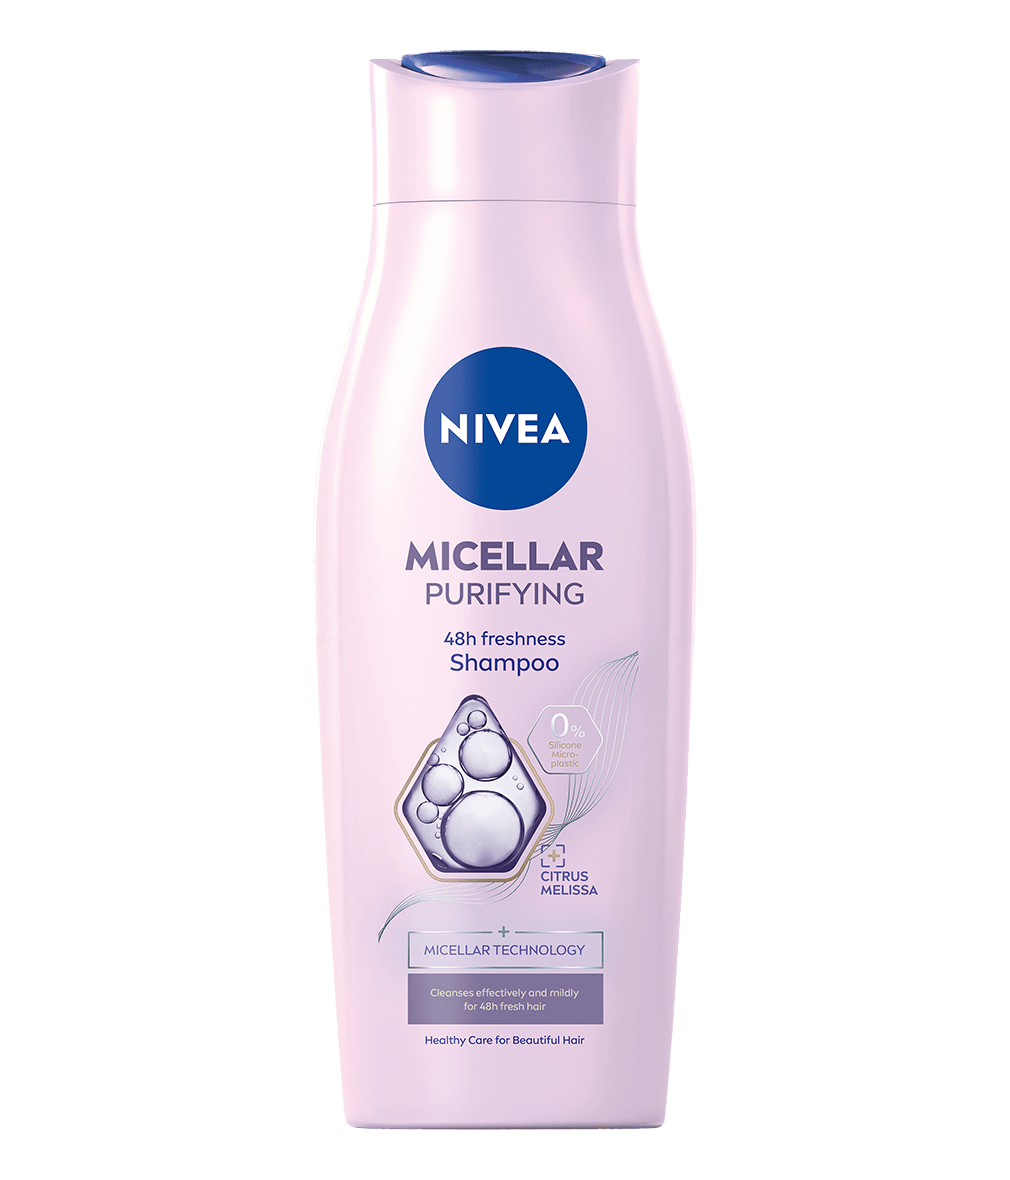 nivea głęboko oczyszczający szampon micelarny z ekstraktem z melisy cytrynowej